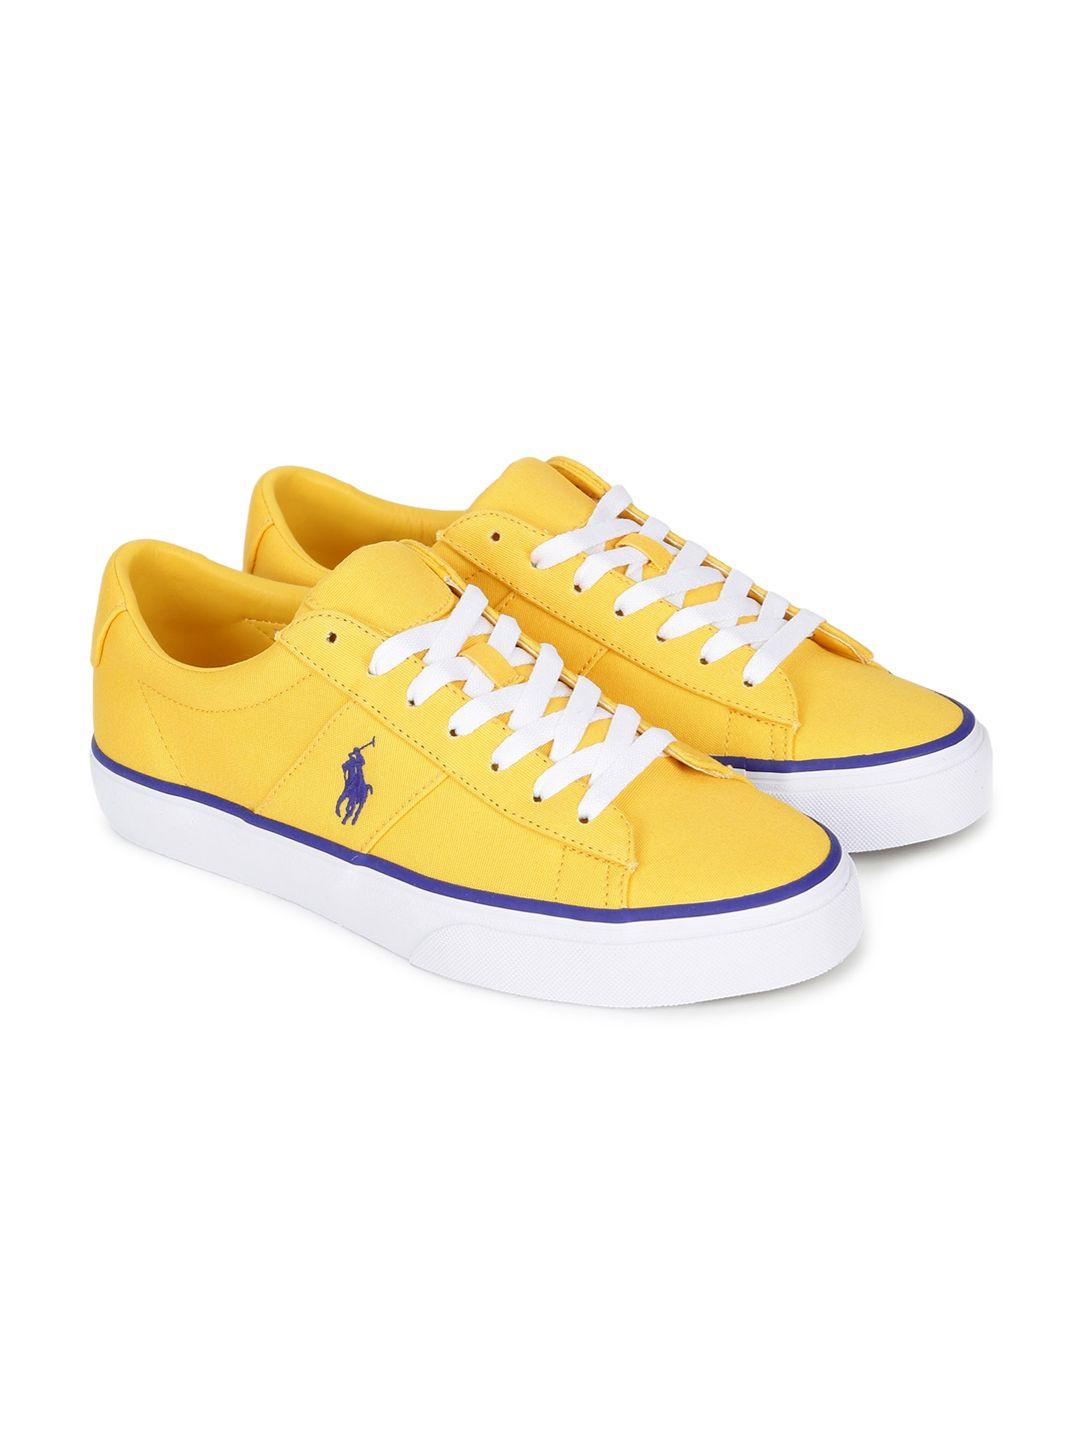 polo-ralph-lauren-men-yellow-sneakers